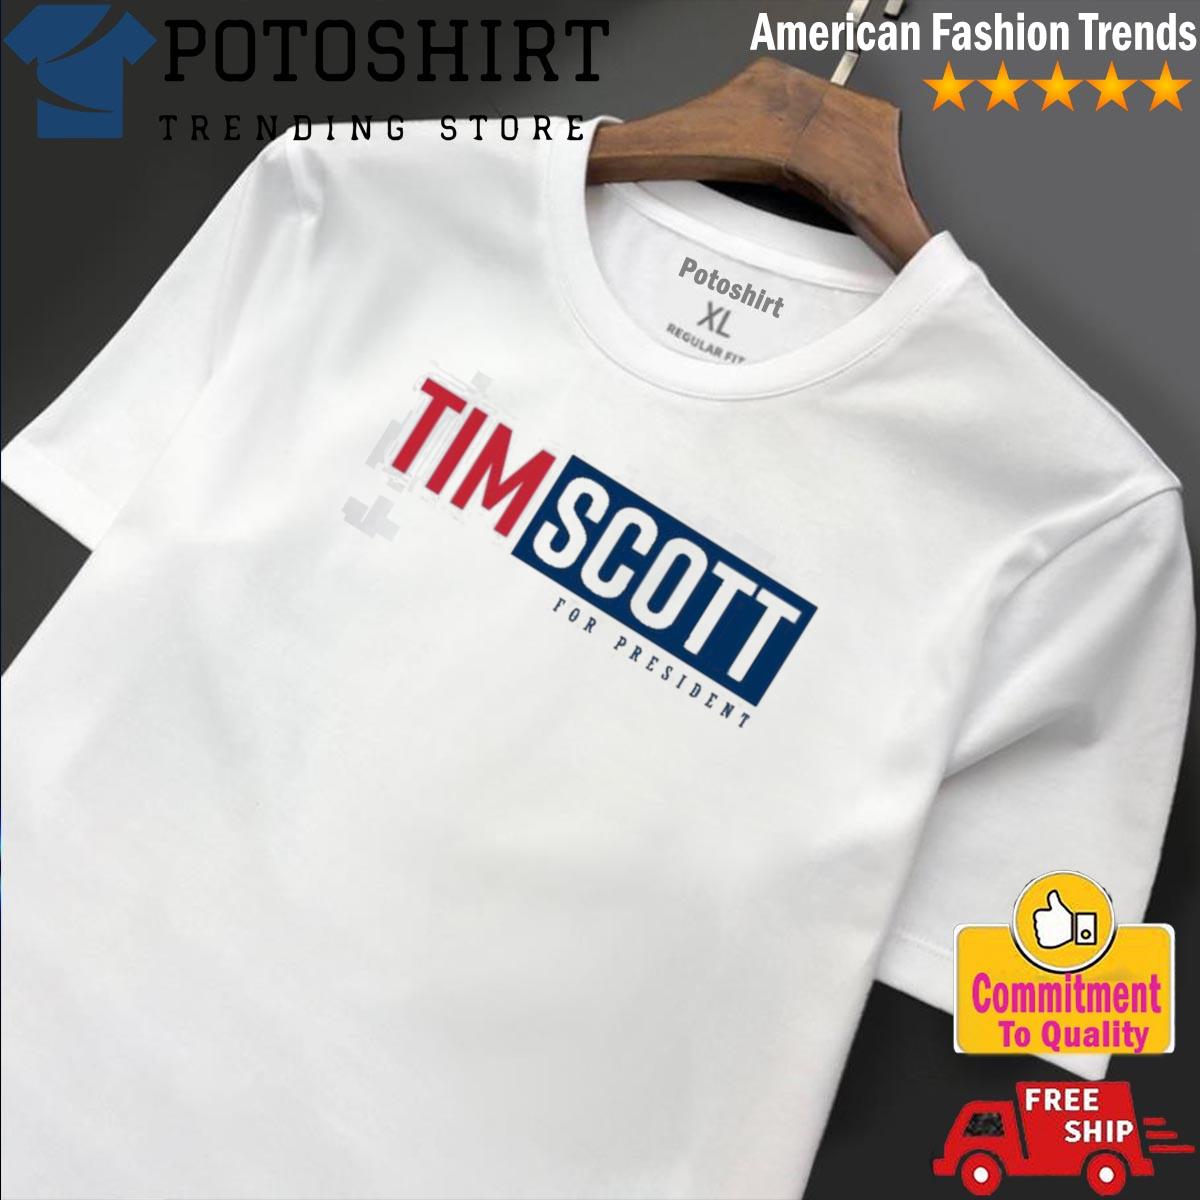 Tim Scott For President new design Shirt